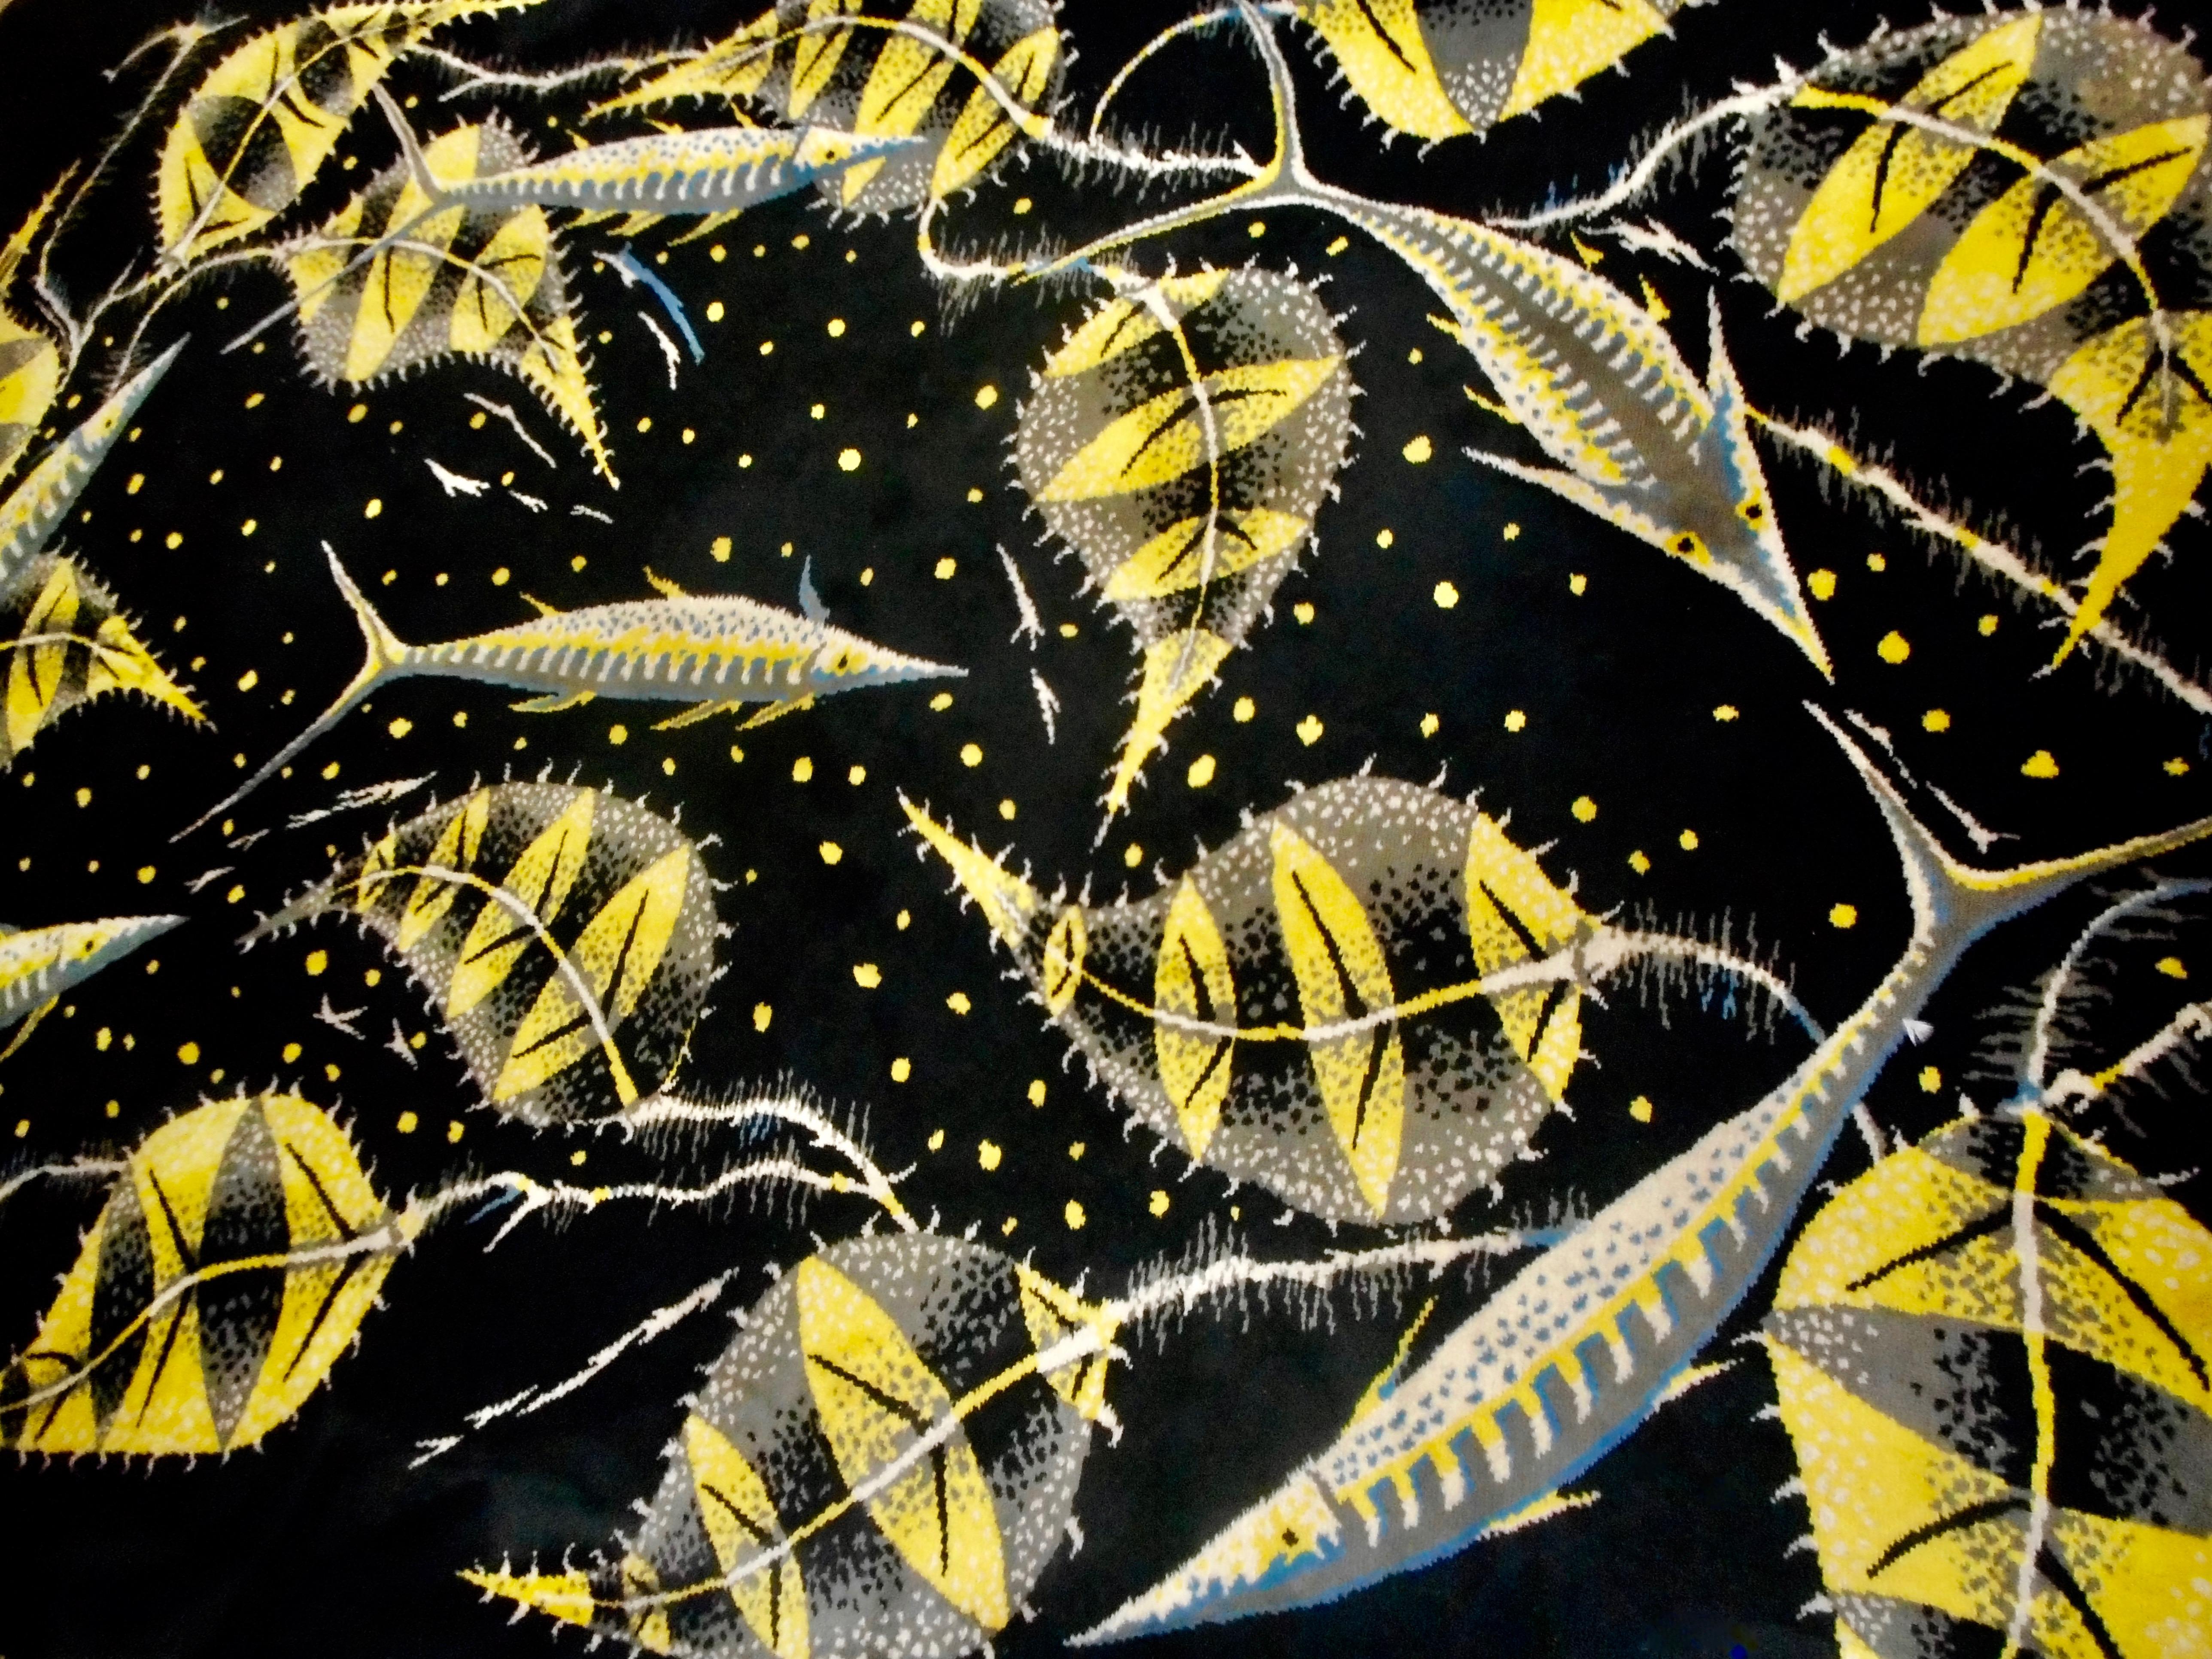 Tapis rare et coloré, fond noir, motif jaune, bleu et grège.
Signé par le célèbre artiste belge Edmont Dubrunfaut,
Vers 1950.